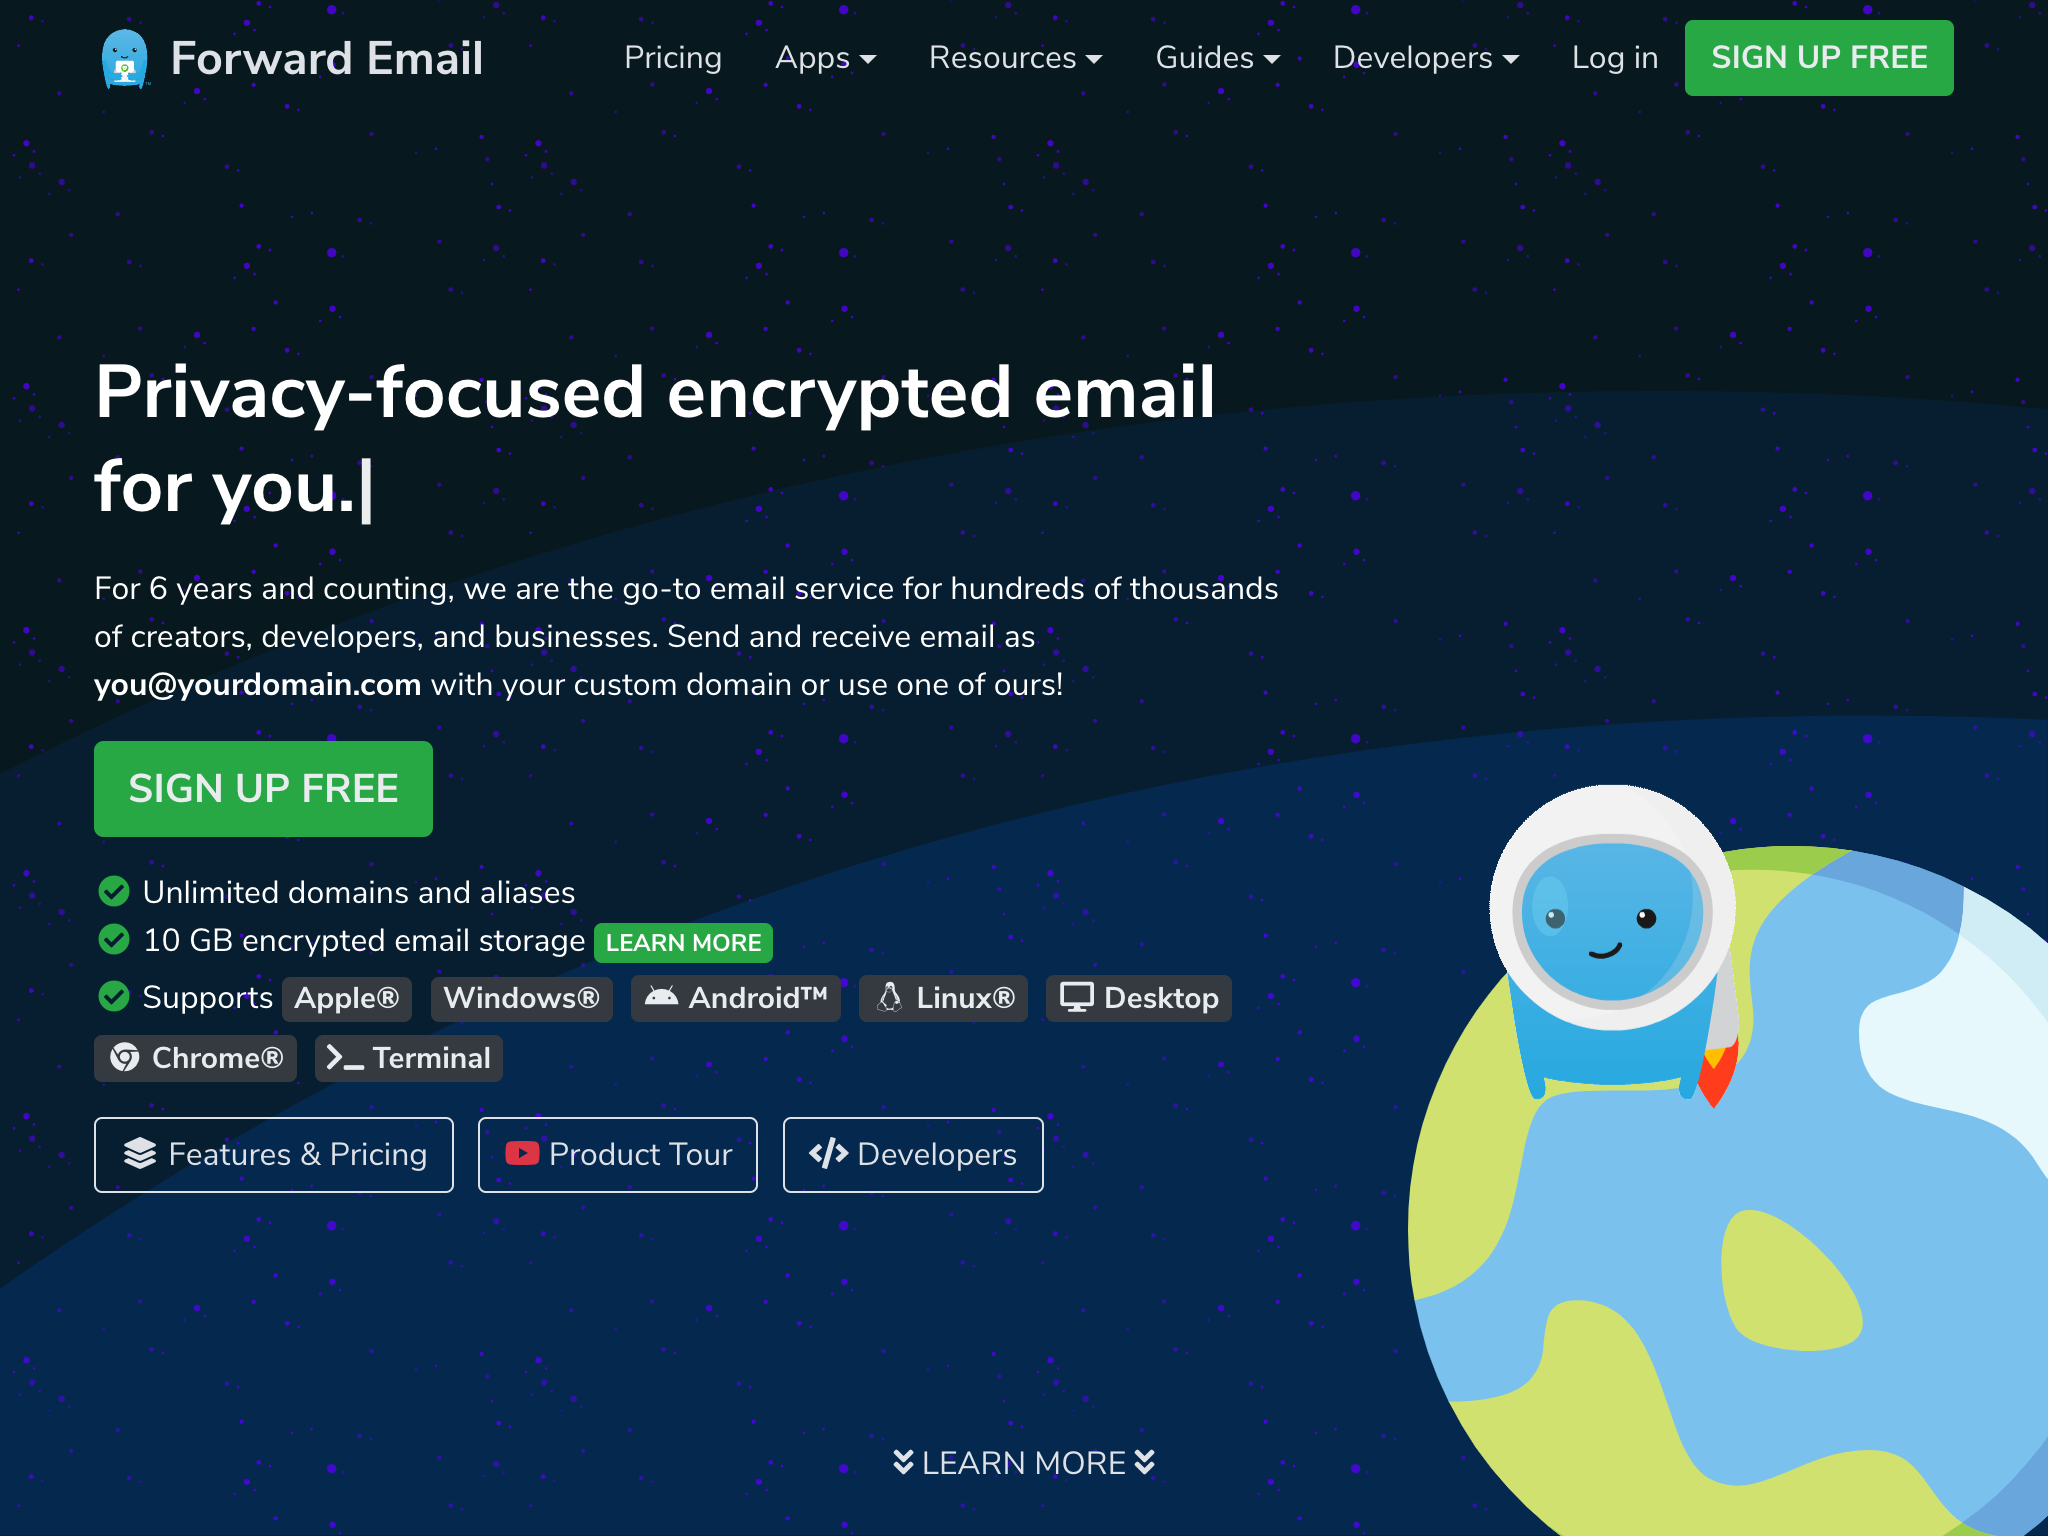 Forward Email là email nguồn mở máy chủ dành cho CalyxOS .